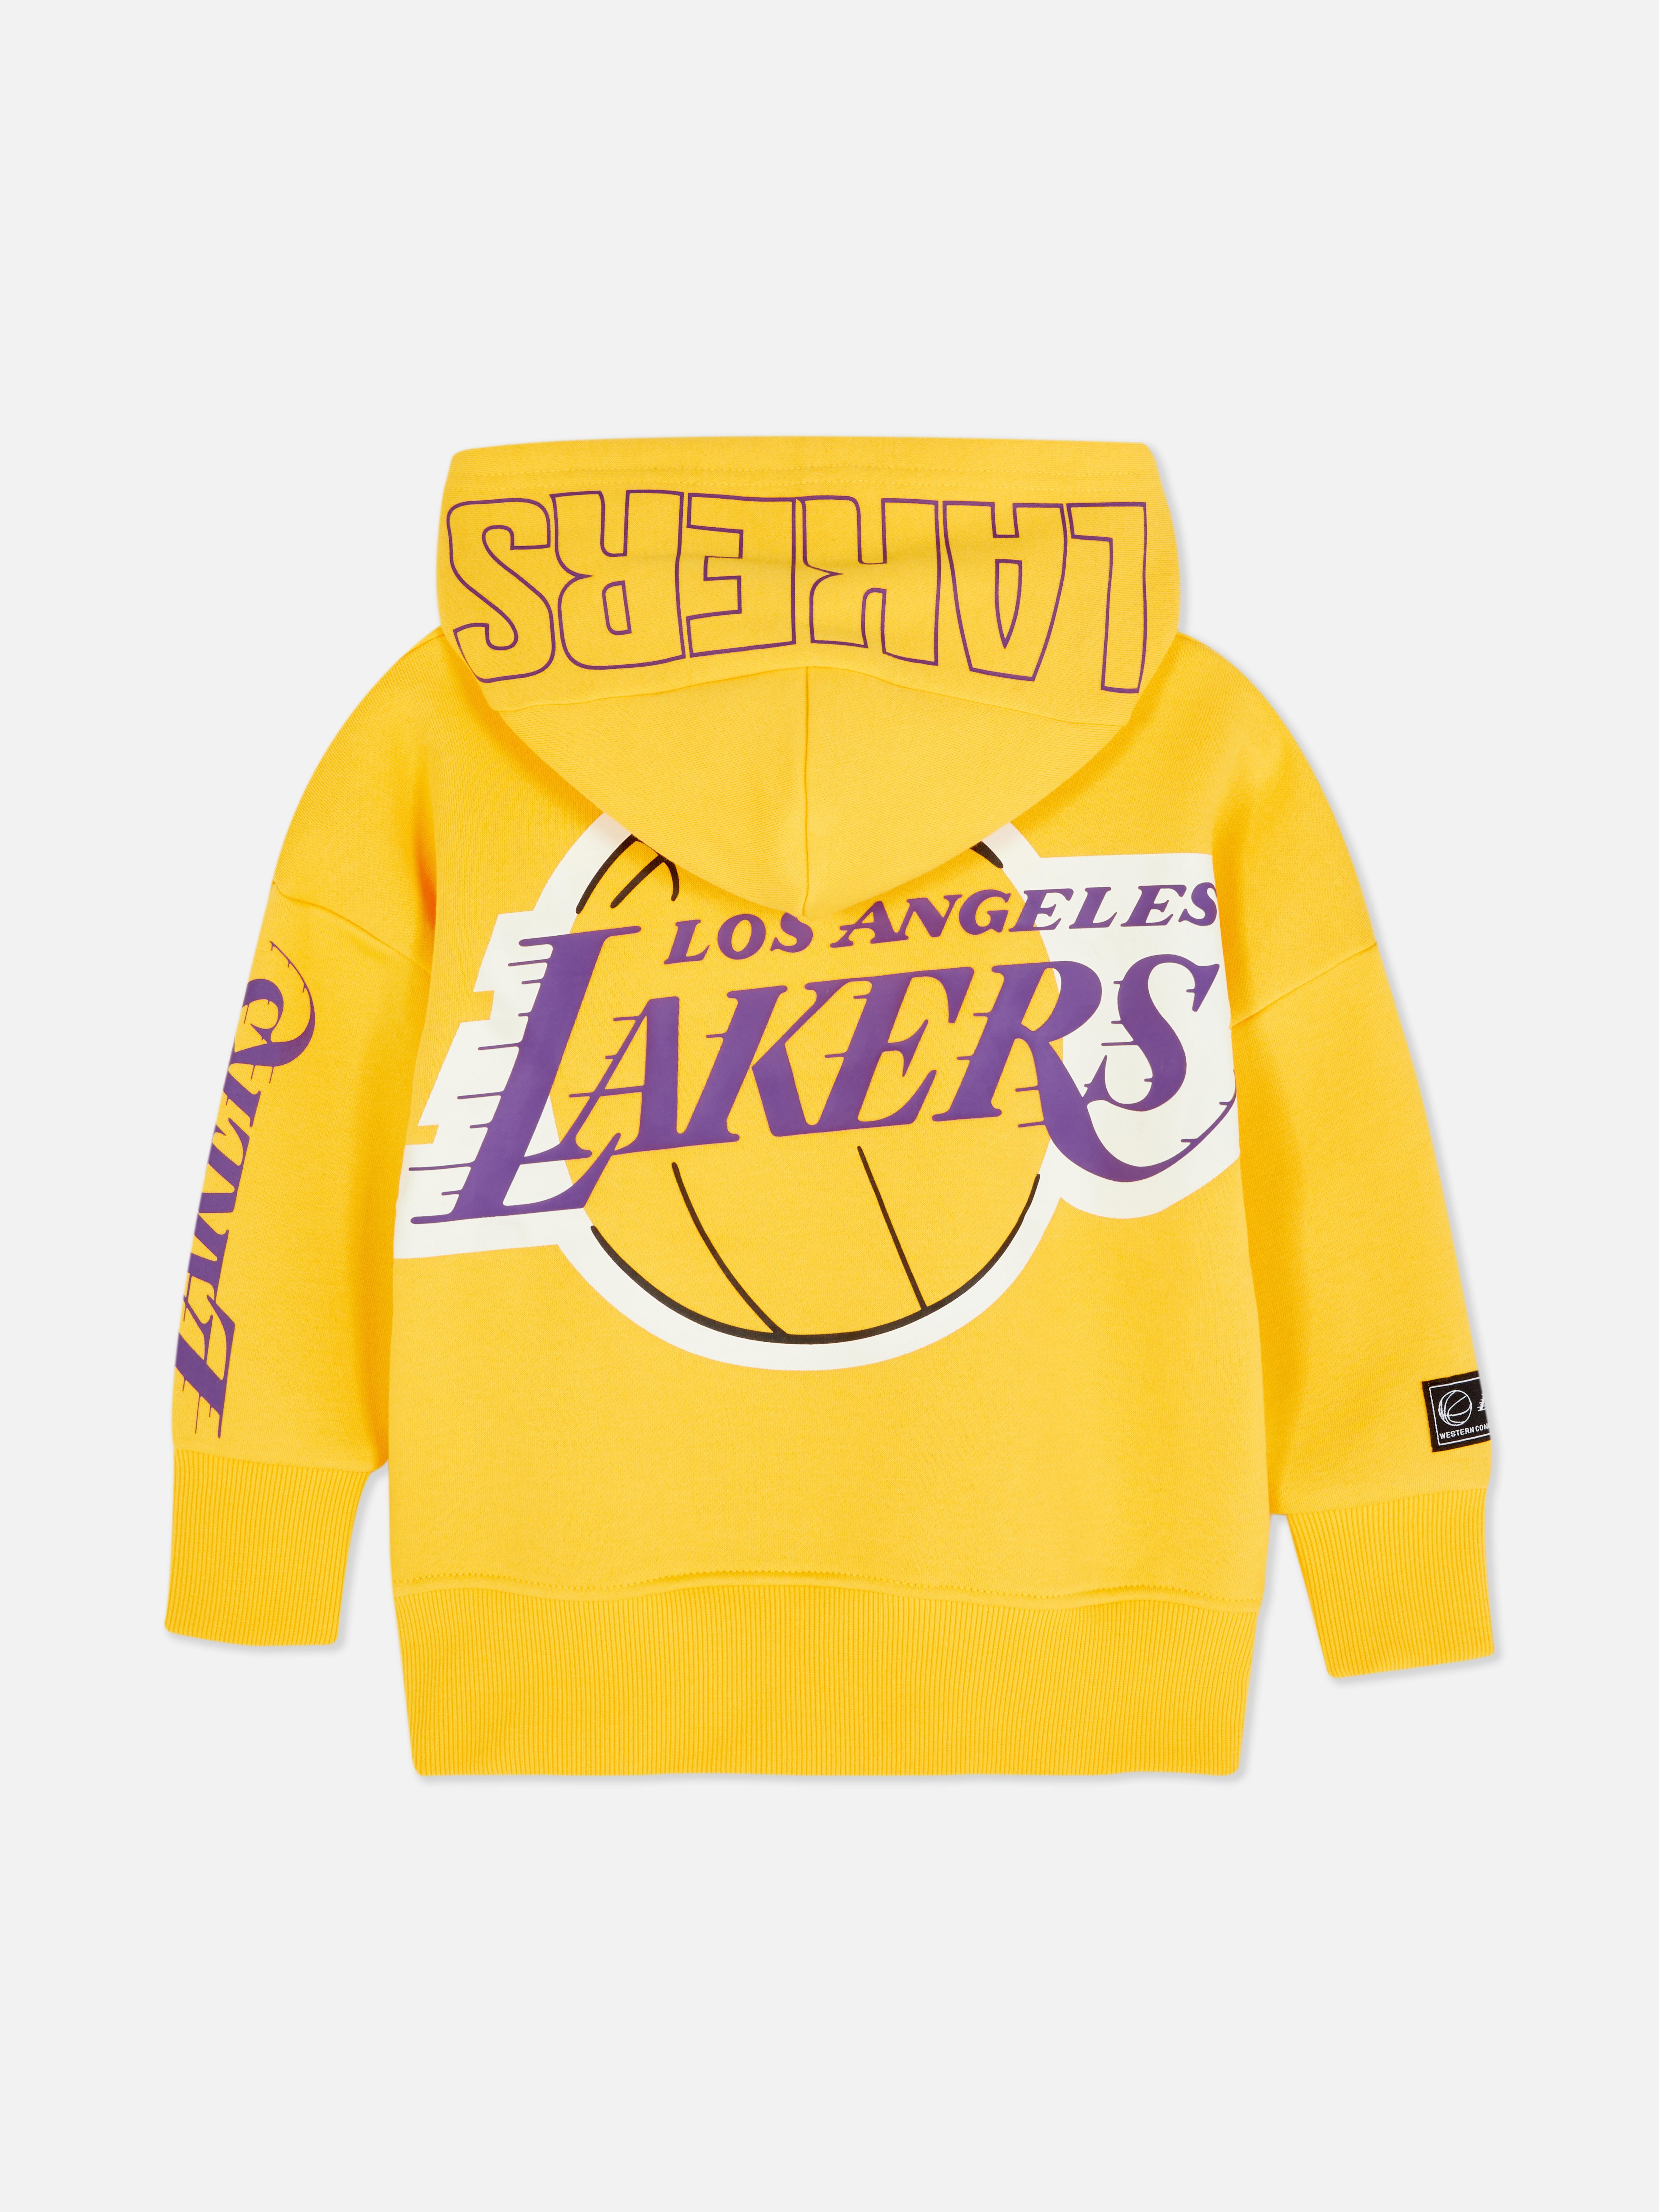 Primark Lakers Grey Sweatshirt - Vinted